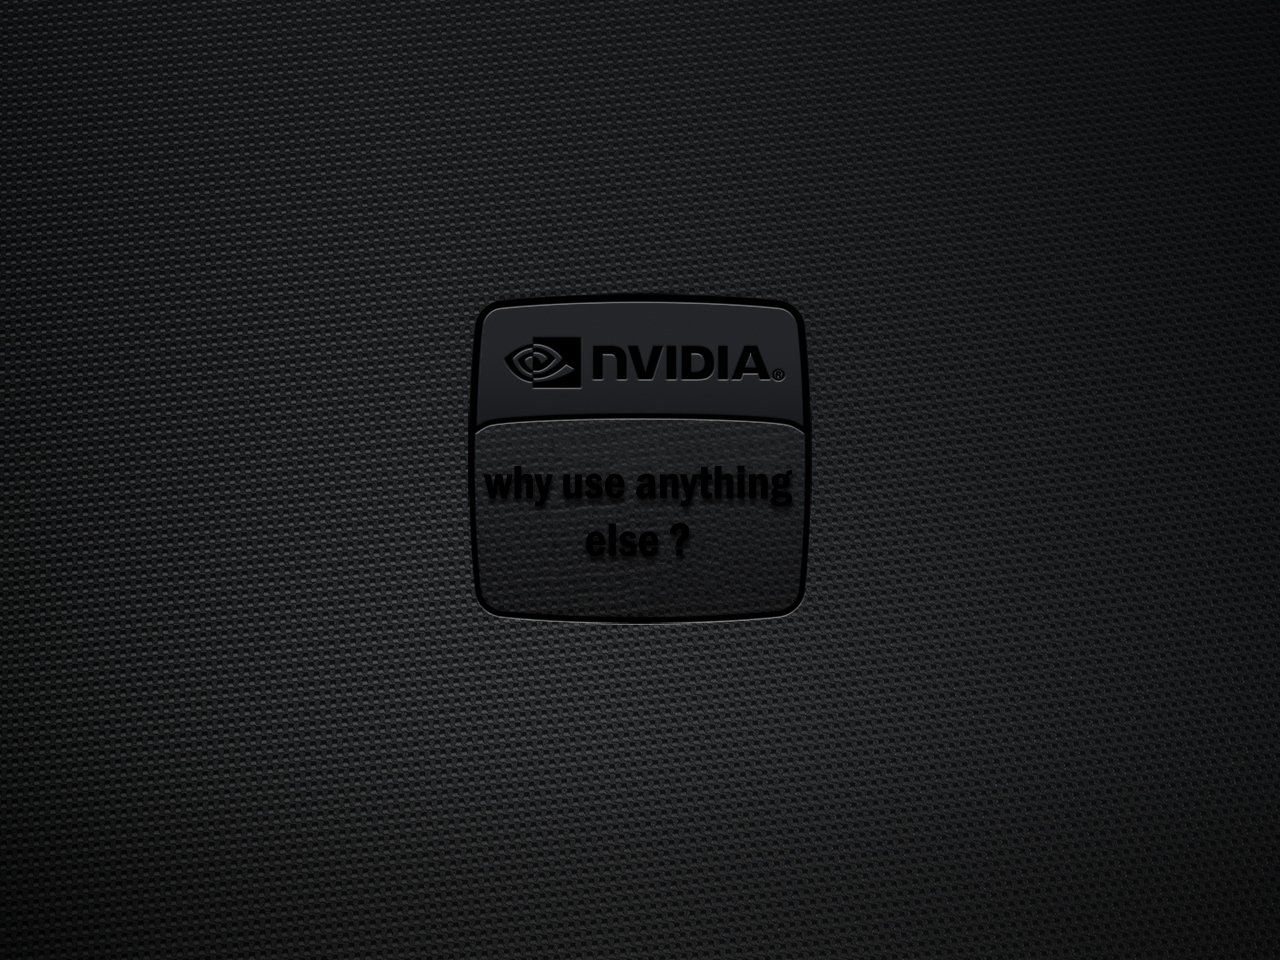 technology Nvidia Image